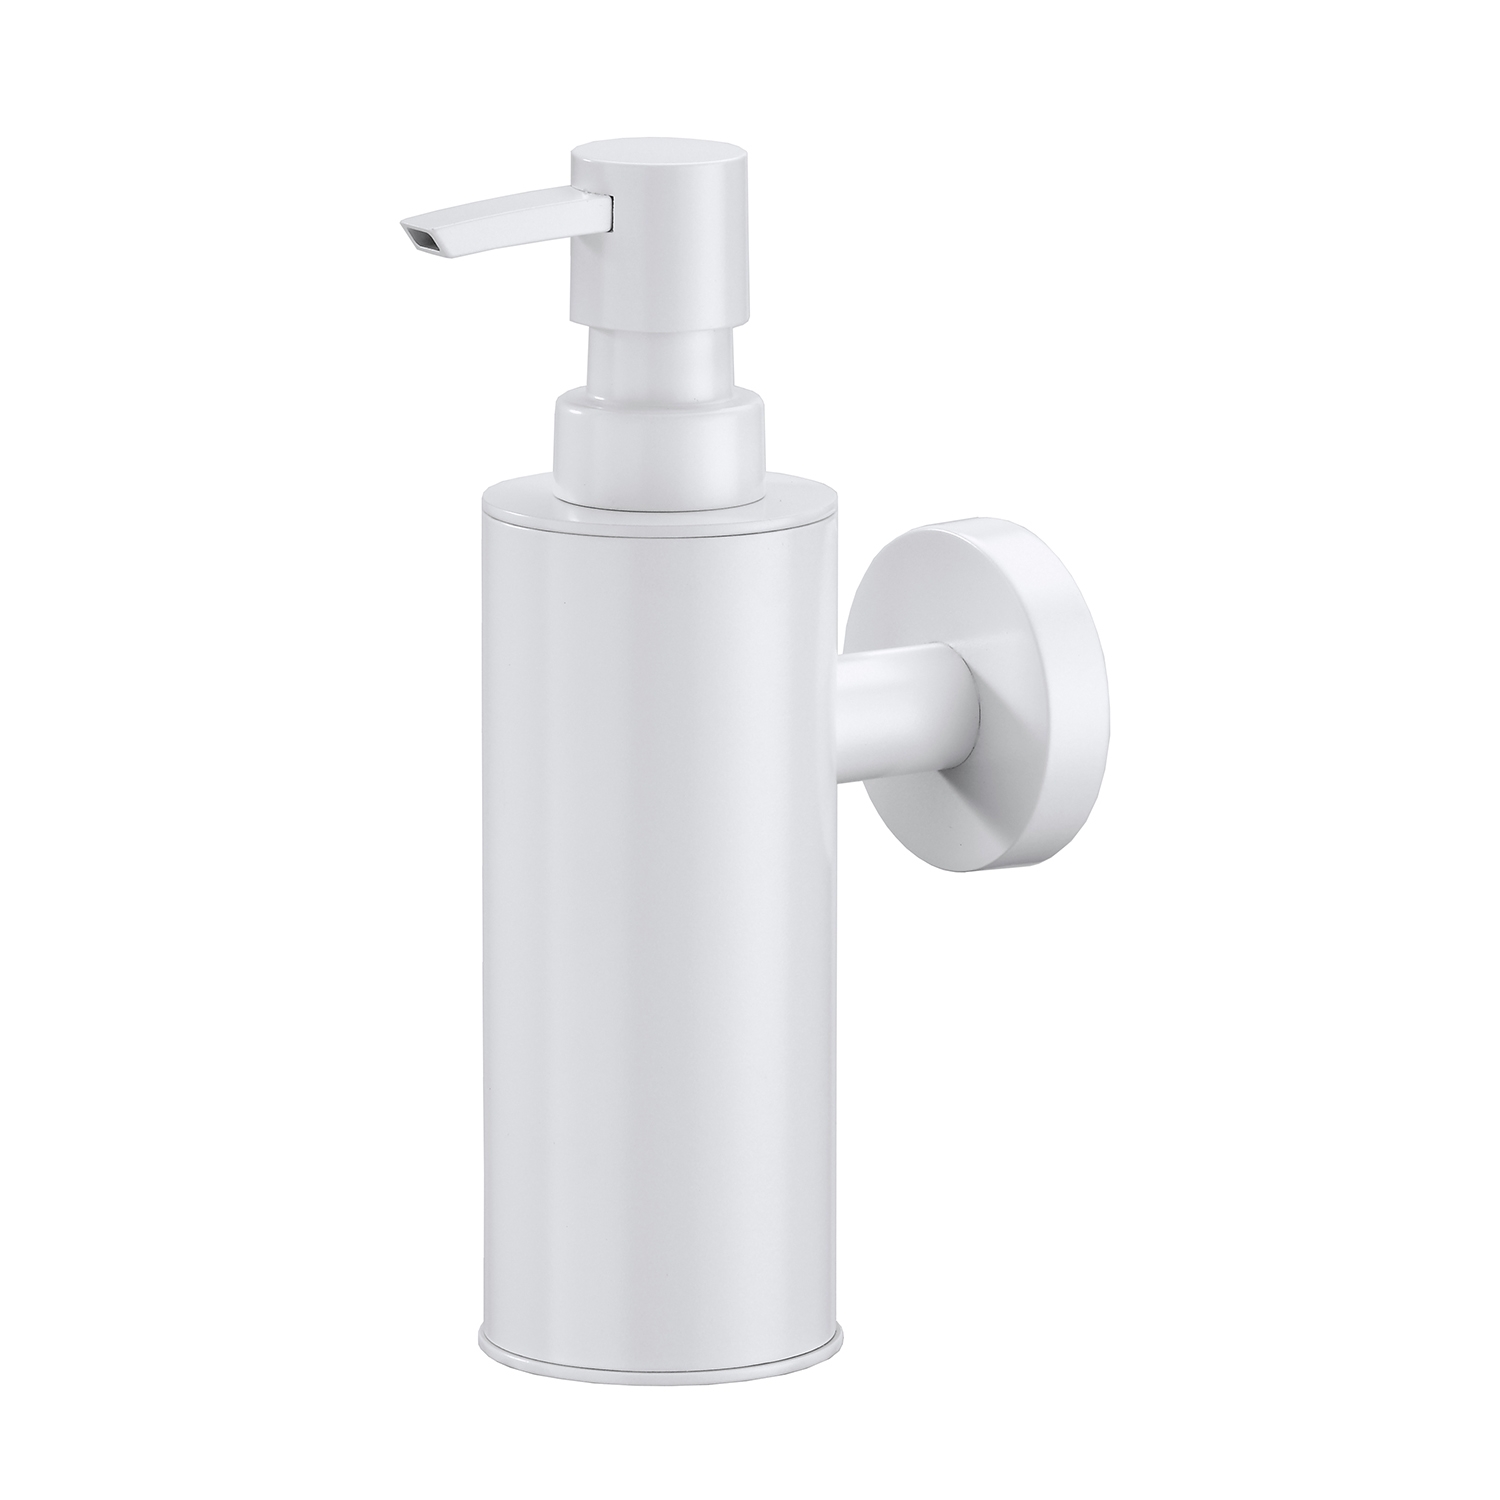 K-1399 WHITE Free standing soap dispenser